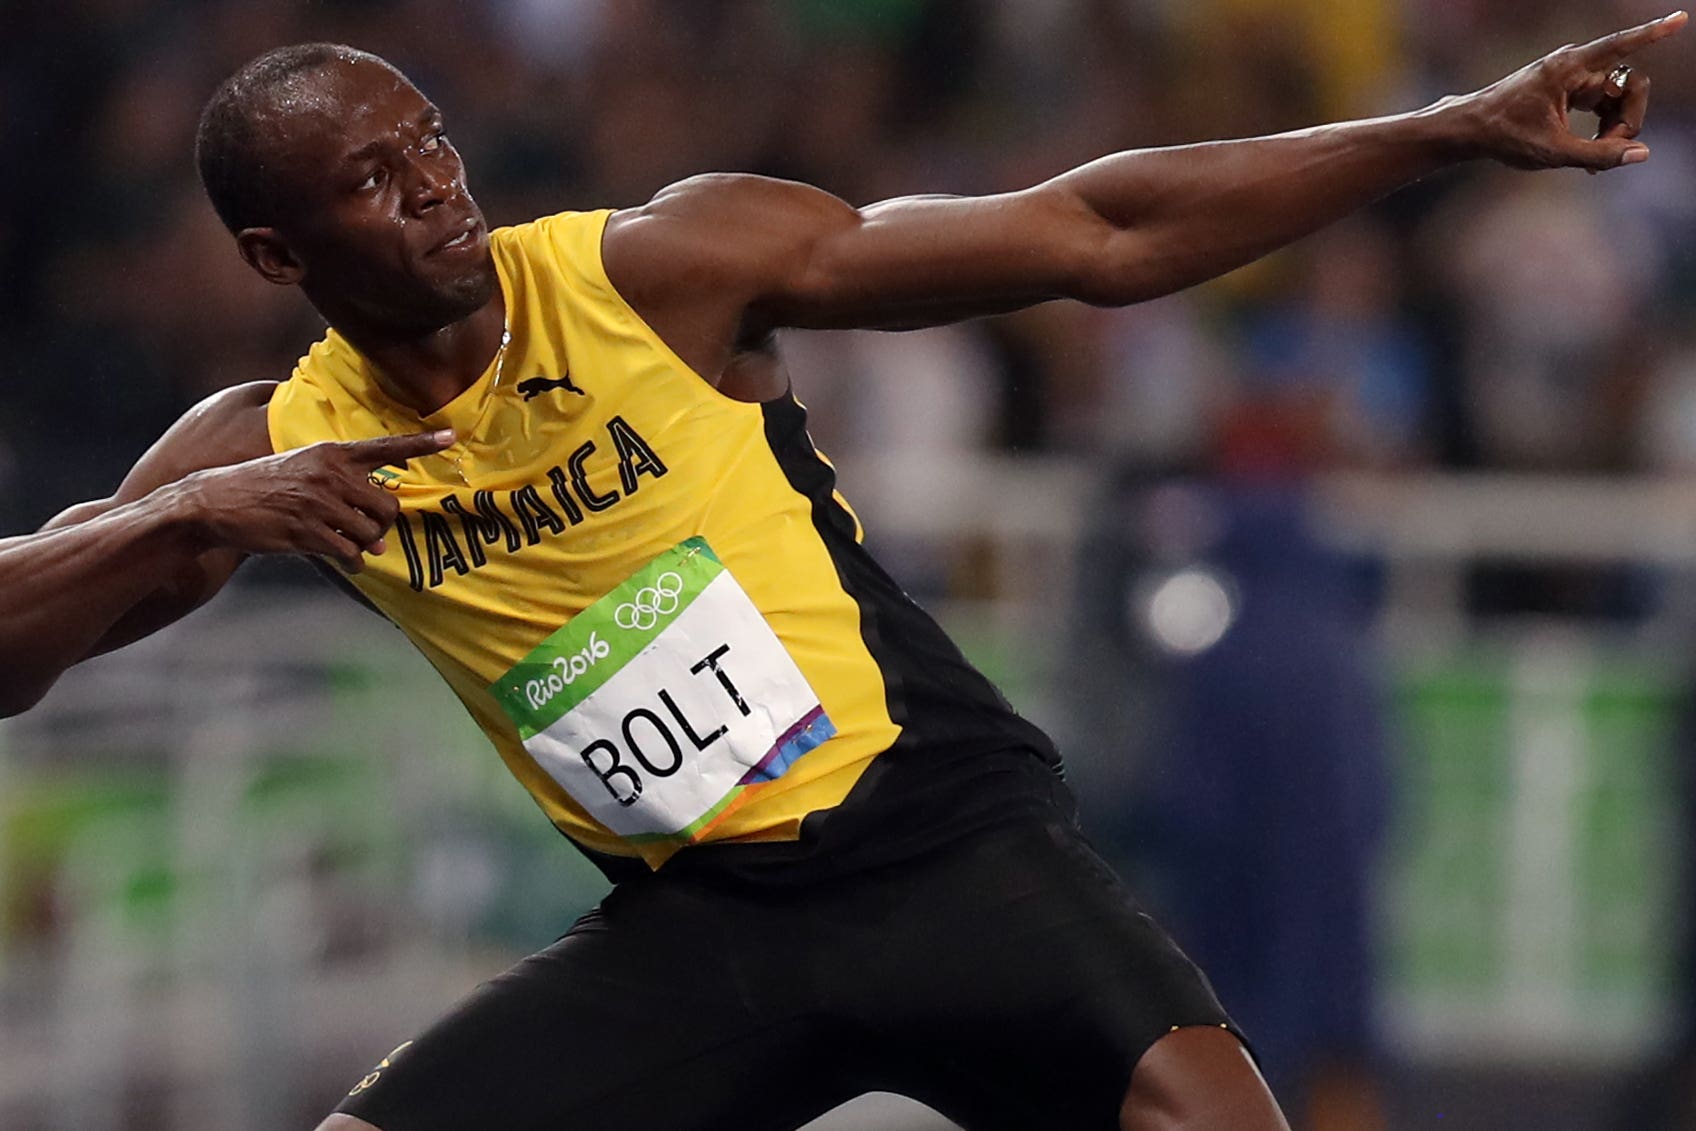 Usain Bolt had a storied athletics career as a sprinter